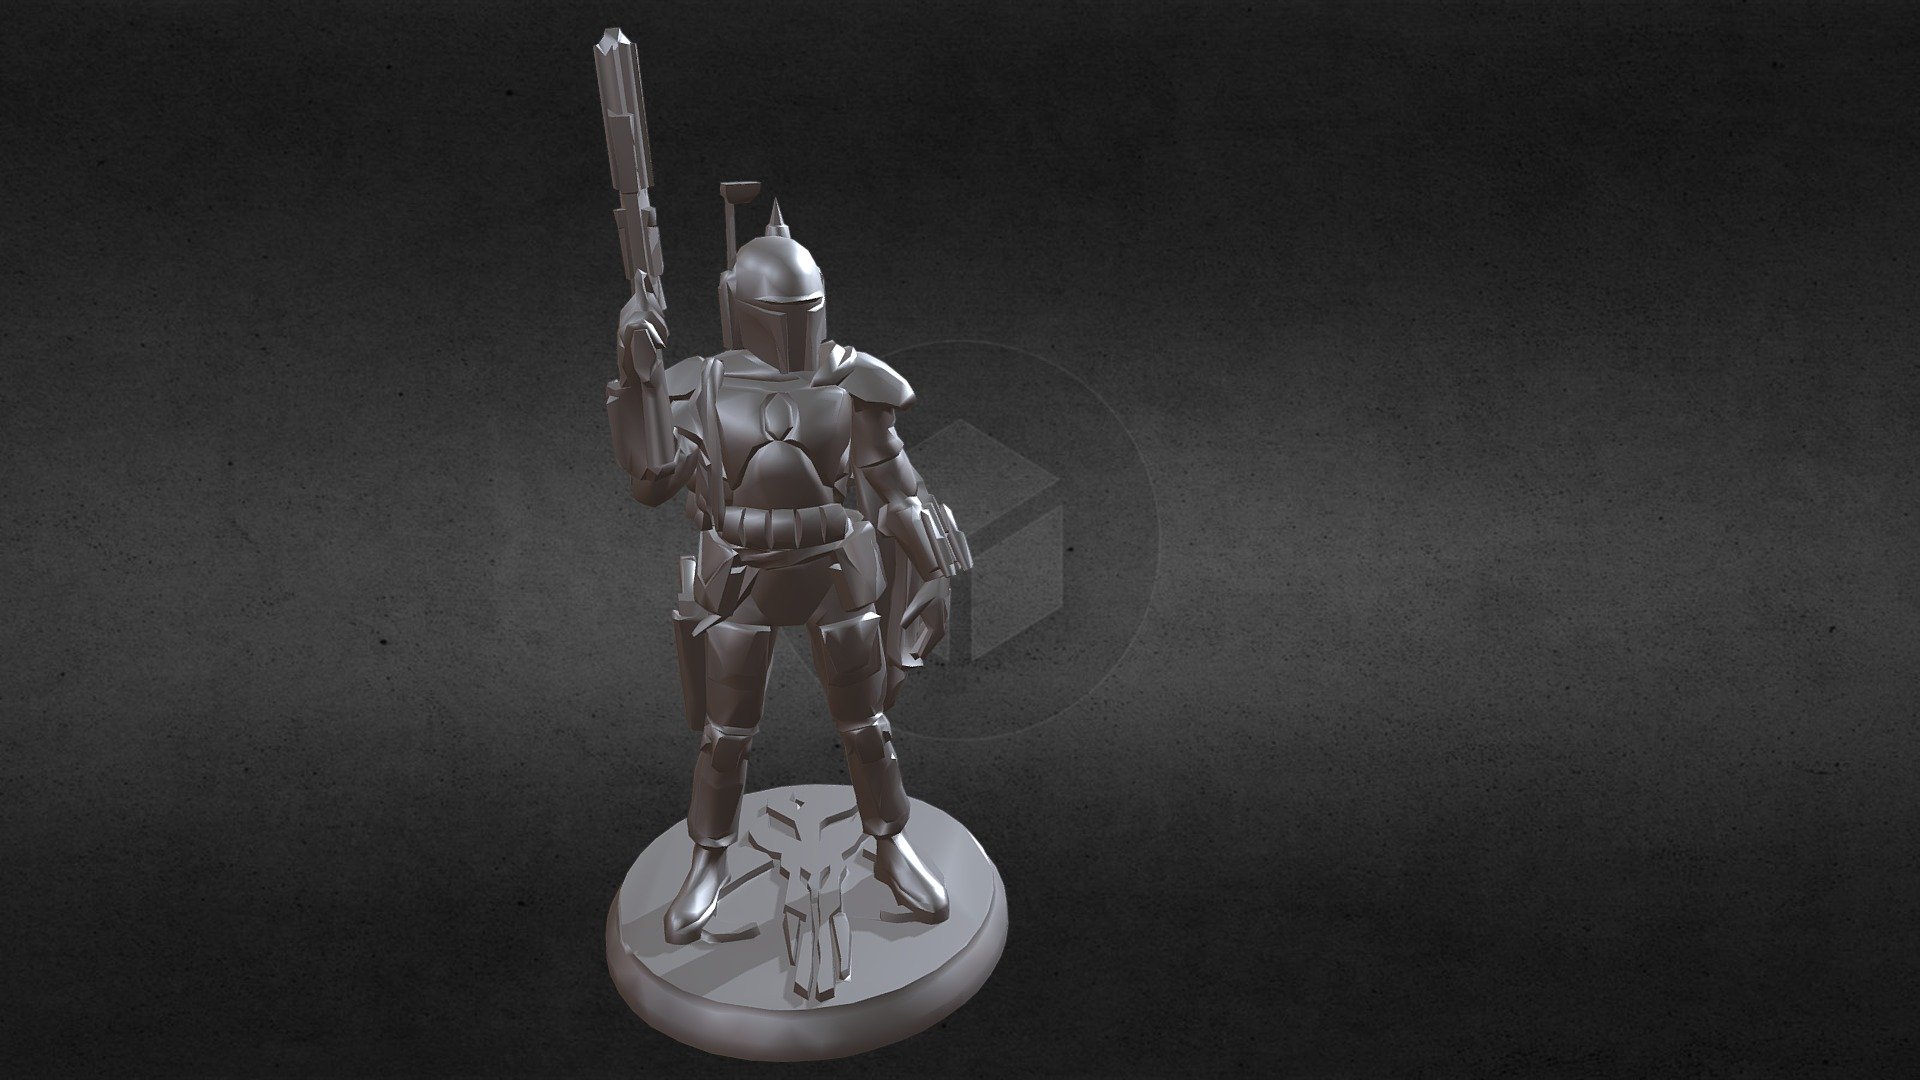 Cool statuette of the Mandalorian warrior Bob Fett - Boba Fett - 3D model by Latyn4ik (@ilatincev) 3d model